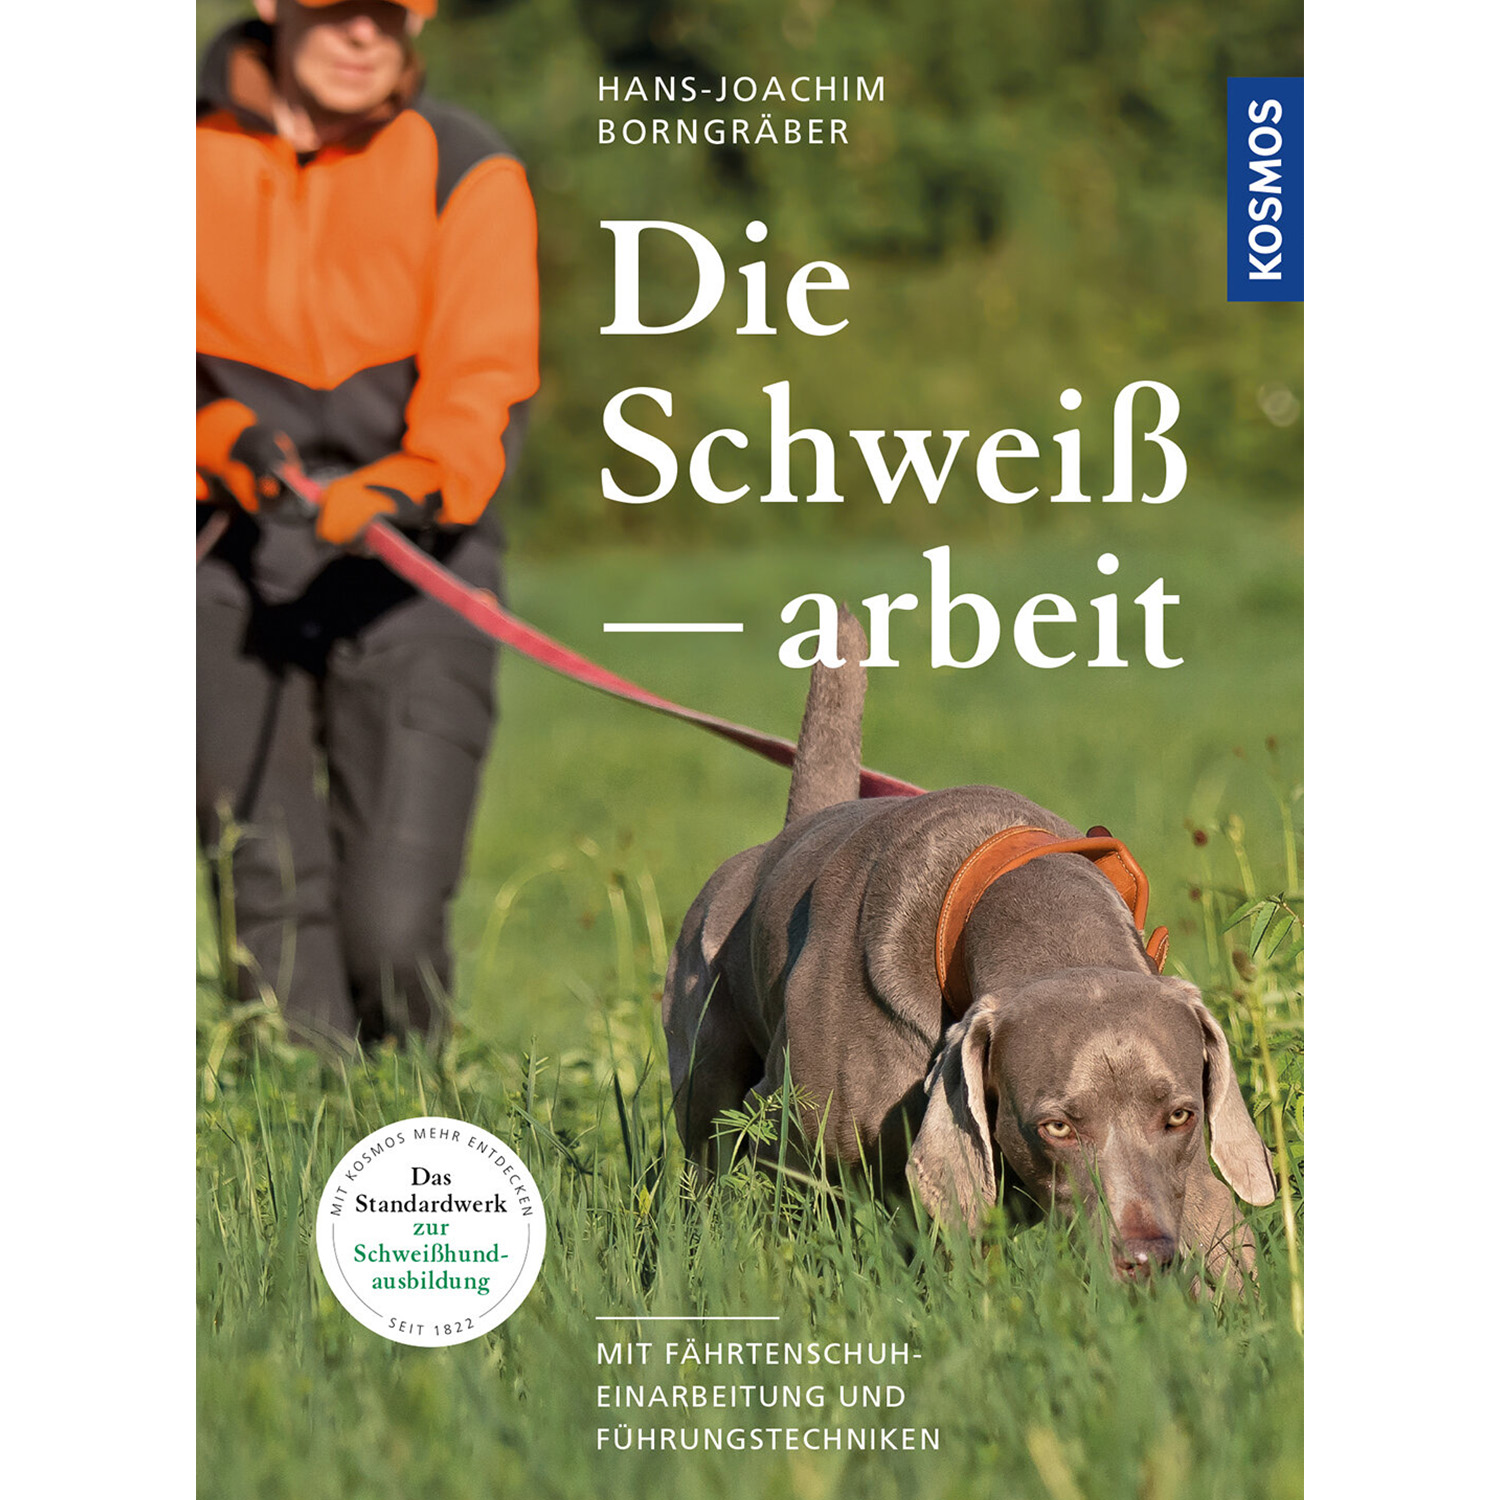 Die Schweißarbeit - Buch - Hans-Joachim Borngräber - Schwarzwildjagd